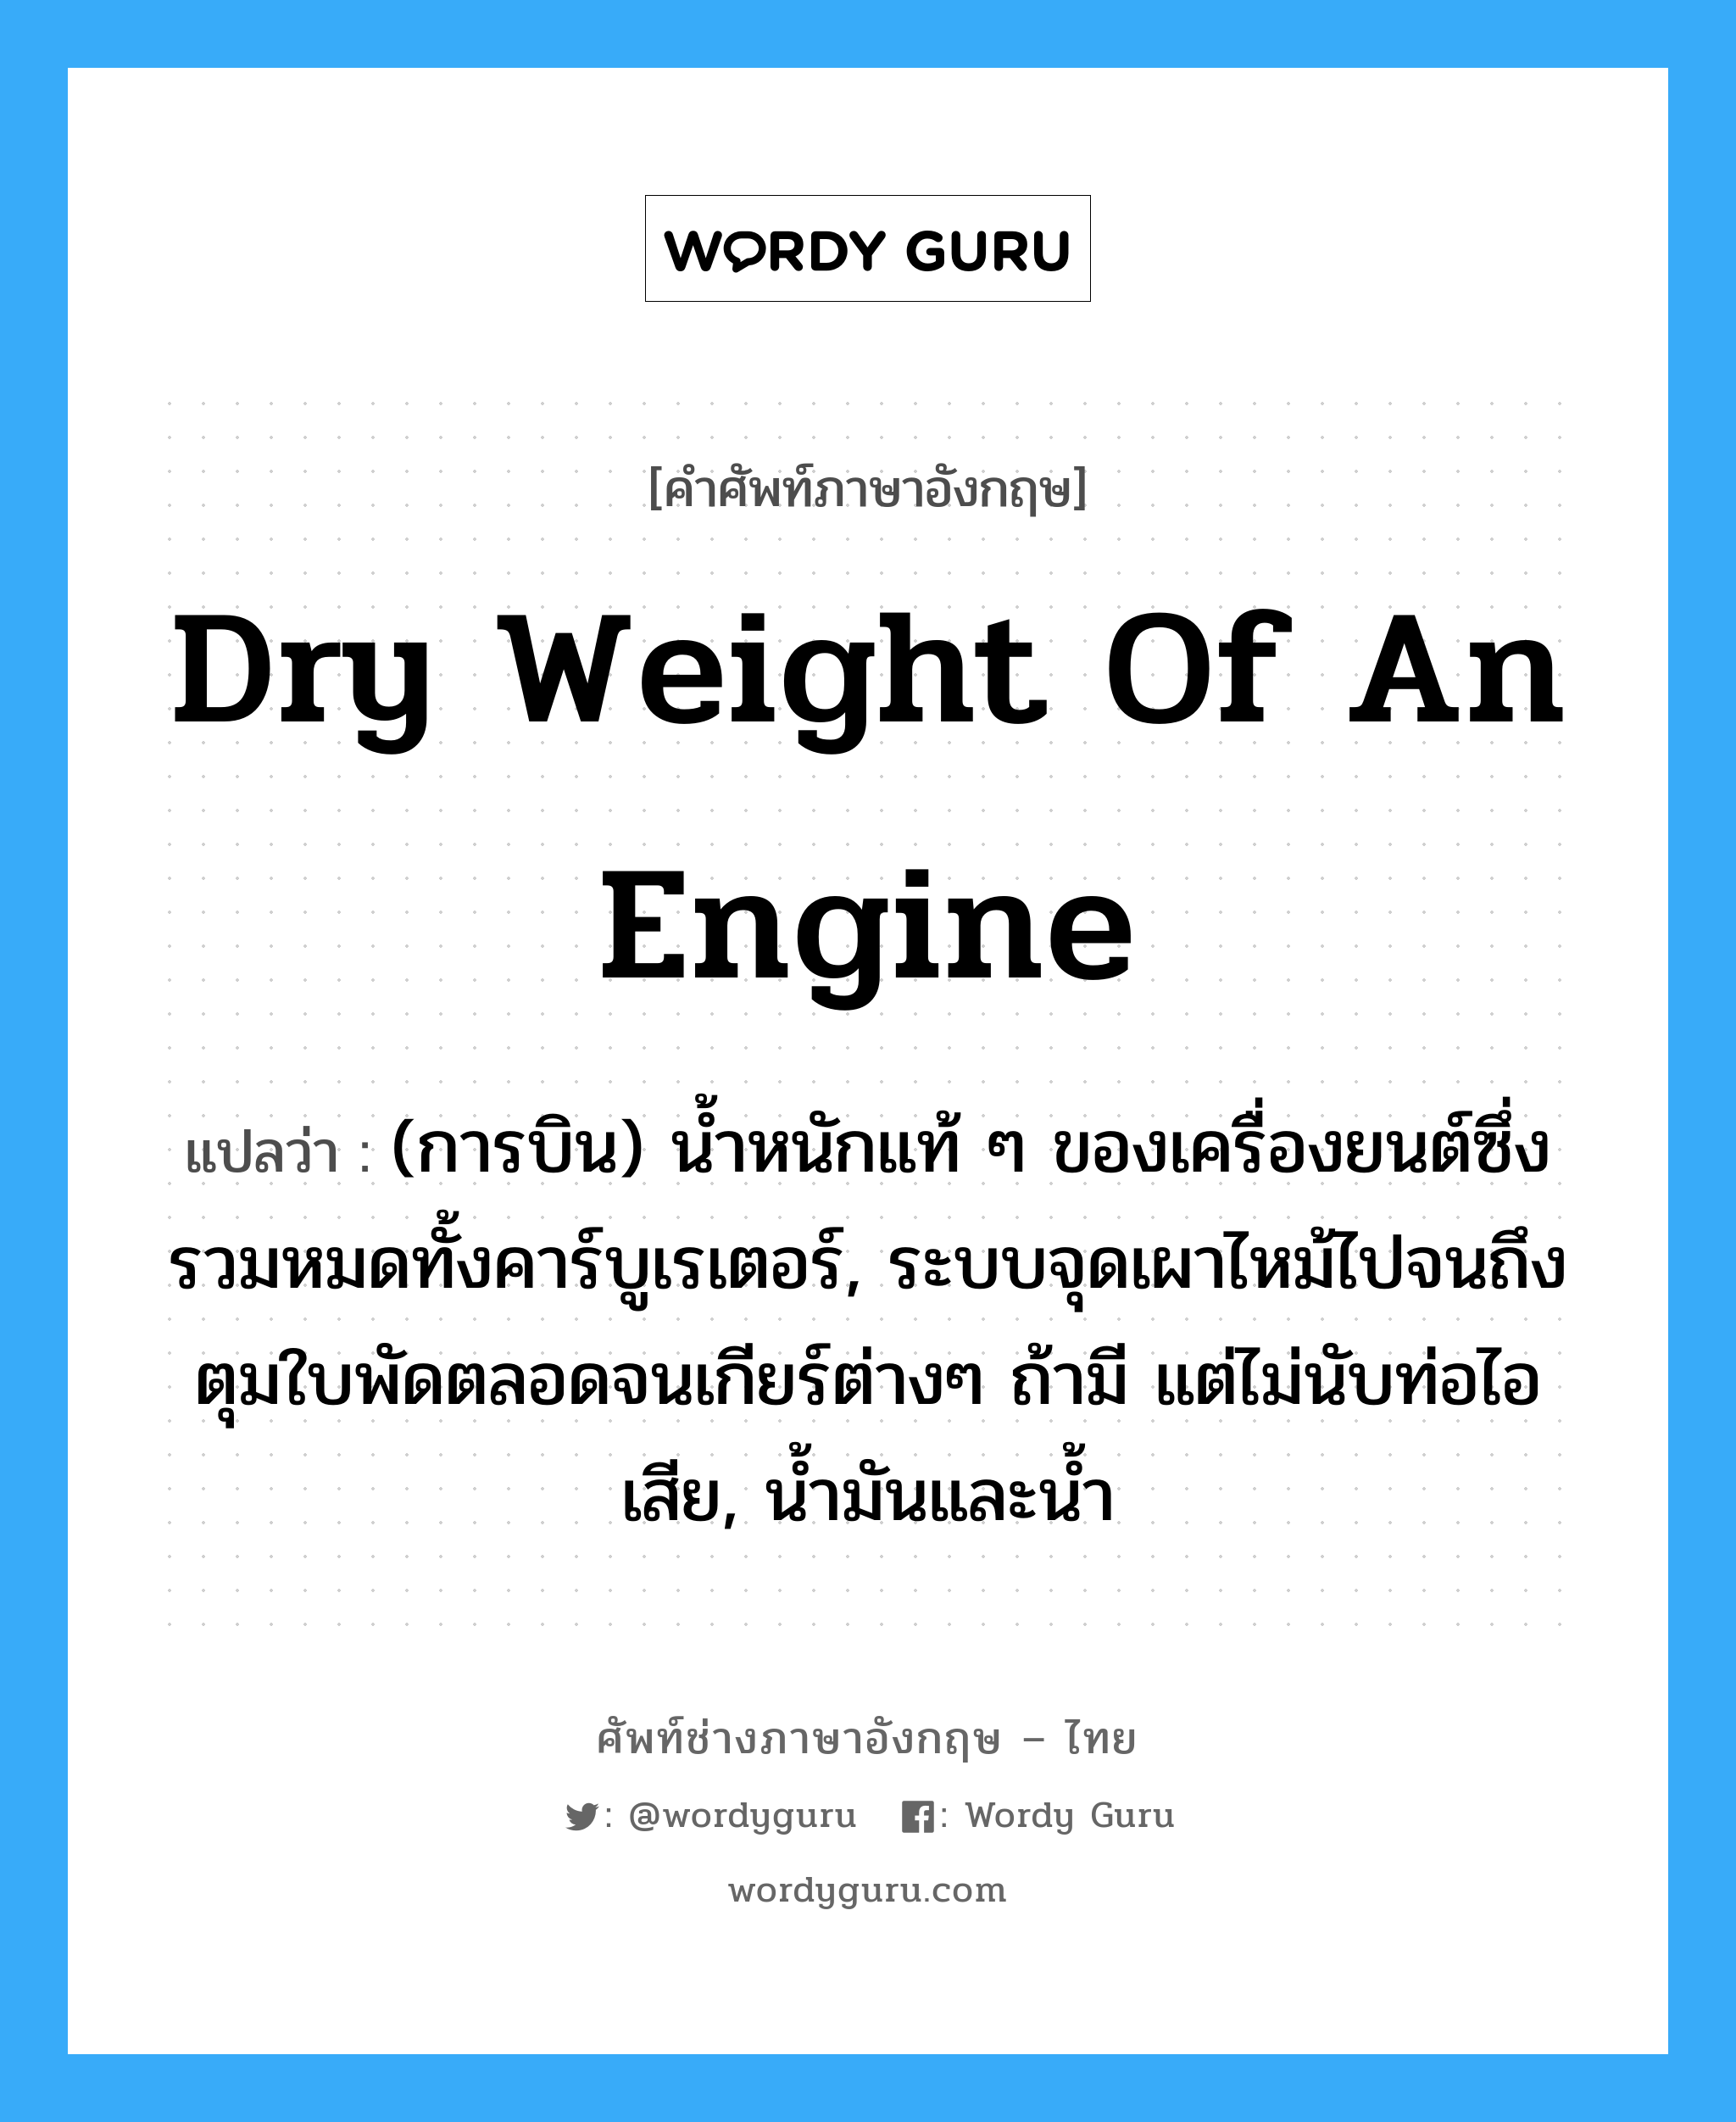 dry weight of an engine แปลว่า?, คำศัพท์ช่างภาษาอังกฤษ - ไทย dry weight of an engine คำศัพท์ภาษาอังกฤษ dry weight of an engine แปลว่า (การบิน) น้ำหนักแท้ ๆ ของเครื่องยนต์ซึ่งรวมหมดทั้งคาร์บูเรเตอร์, ระบบจุดเผาไหม้ไปจนถึงตุมใบพัดตลอดจนเกียร์ต่างๆ ถ้ามี แต่ไม่นับท่อไอเสีย, น้ำมันและน้ำ